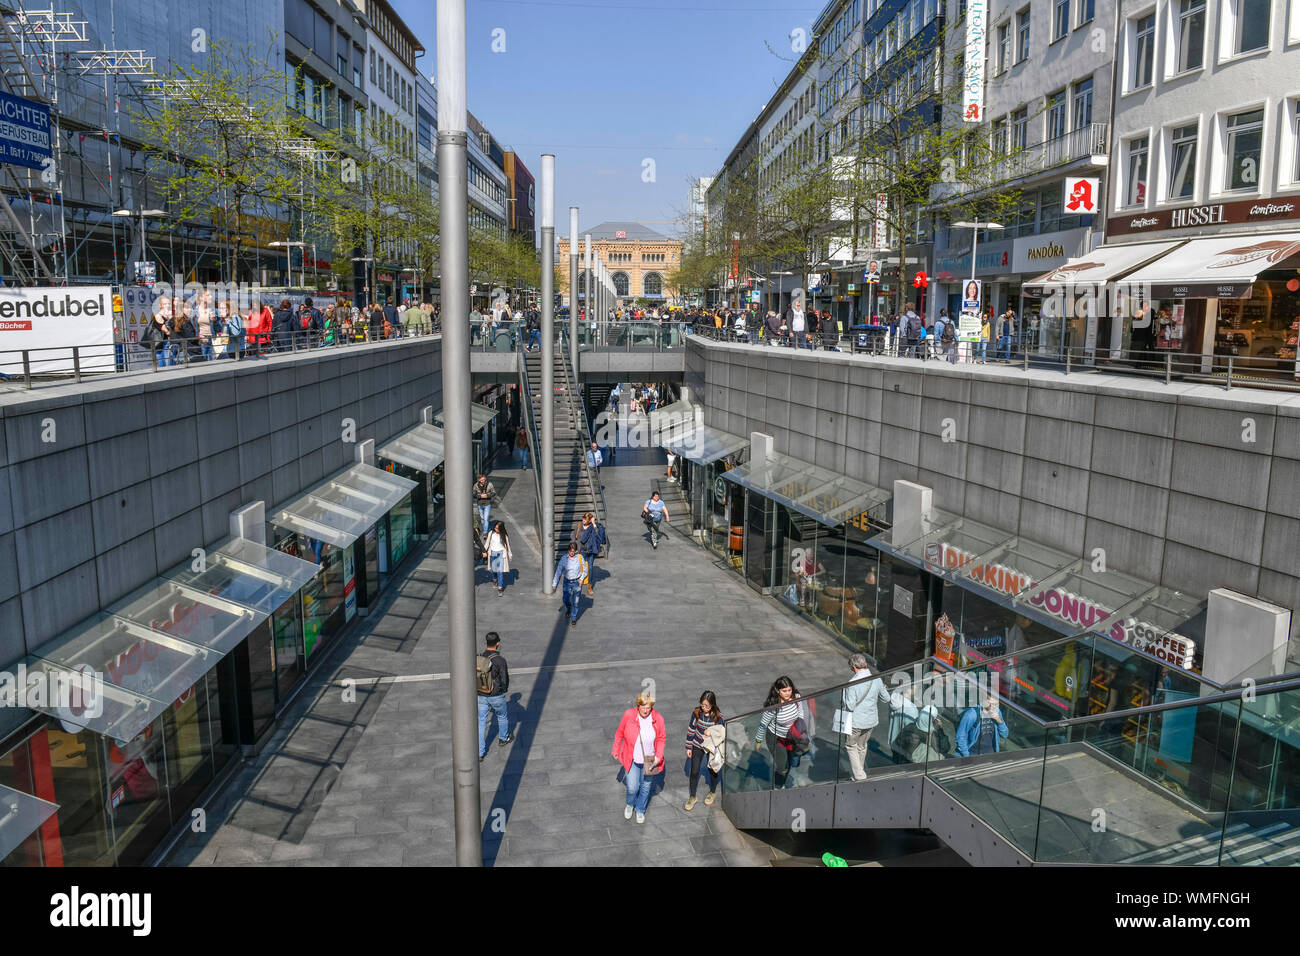 Niki-de-Saint-Phalle-Promenade, Bahnhofstrasse, Hannover, Niedersachsen, Deutschland Stock Photo